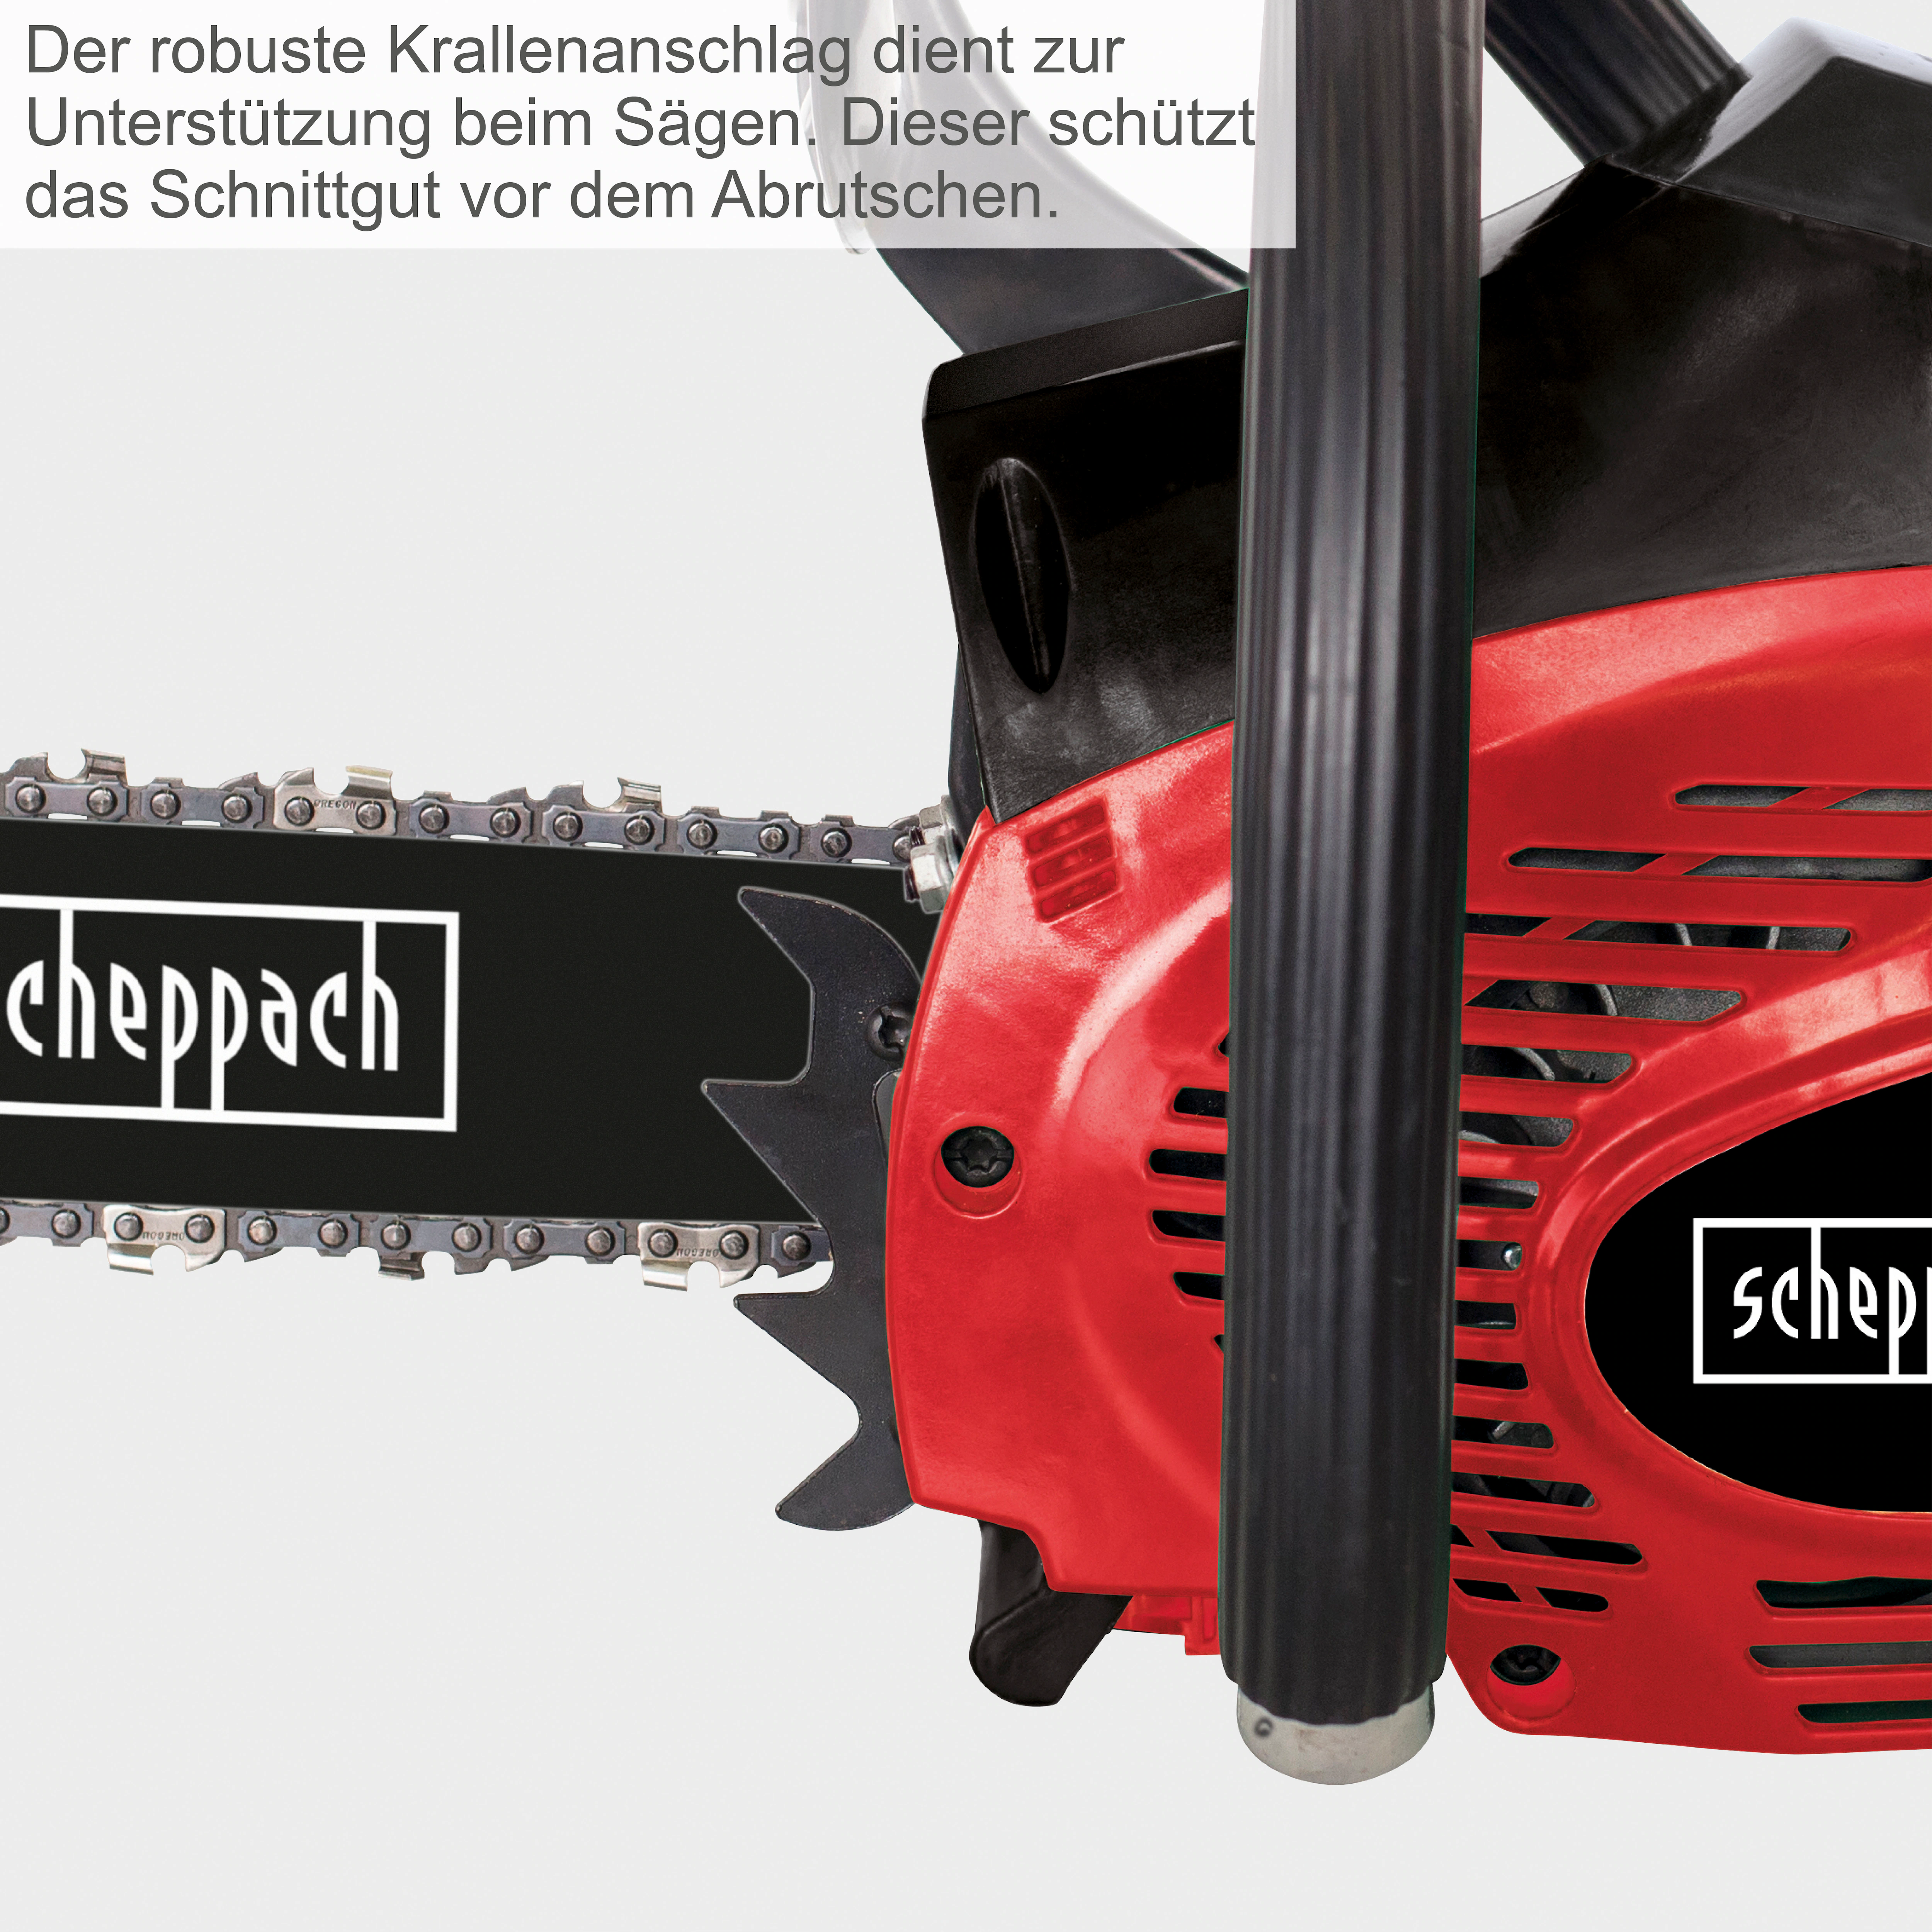 Benzin-kettensäge Scheppach Csp41 1400 W günstig online kaufen